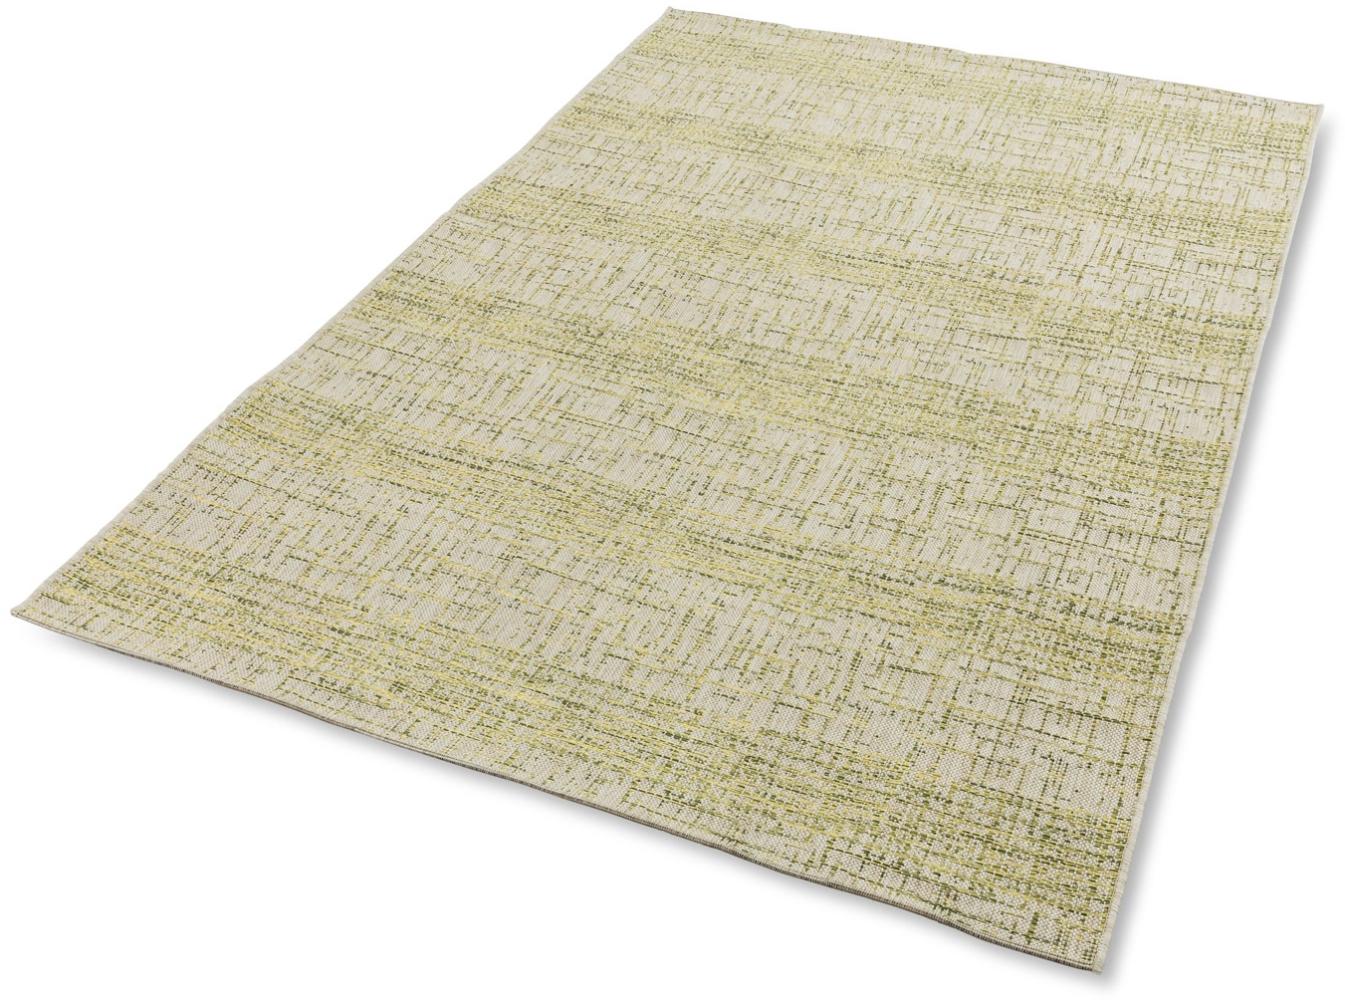 Teppich in grün aus 100% Polypropylen - 170x120x1cm (LxBxH) Bild 1